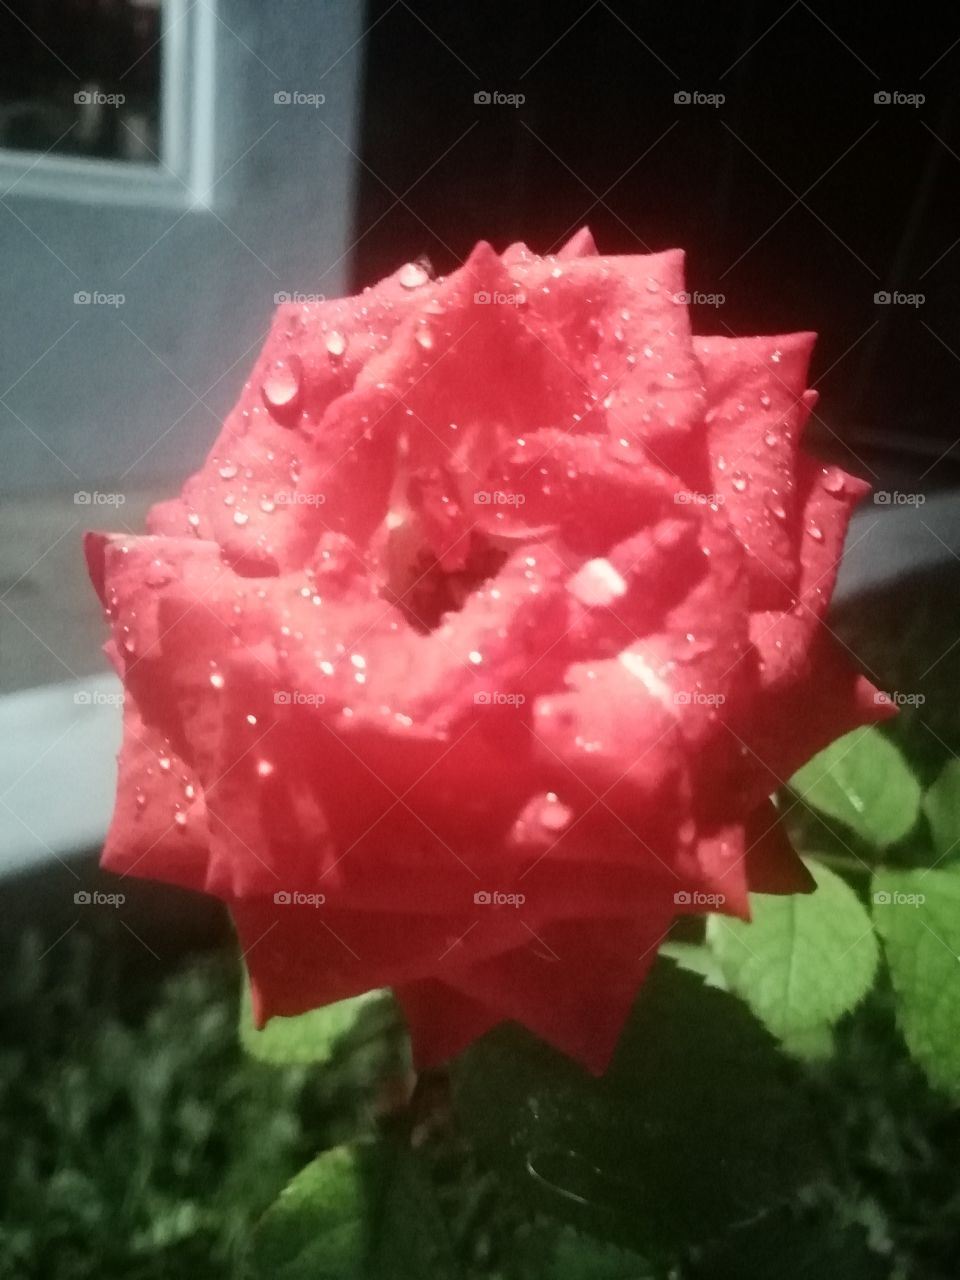 Due drops on Rose petals